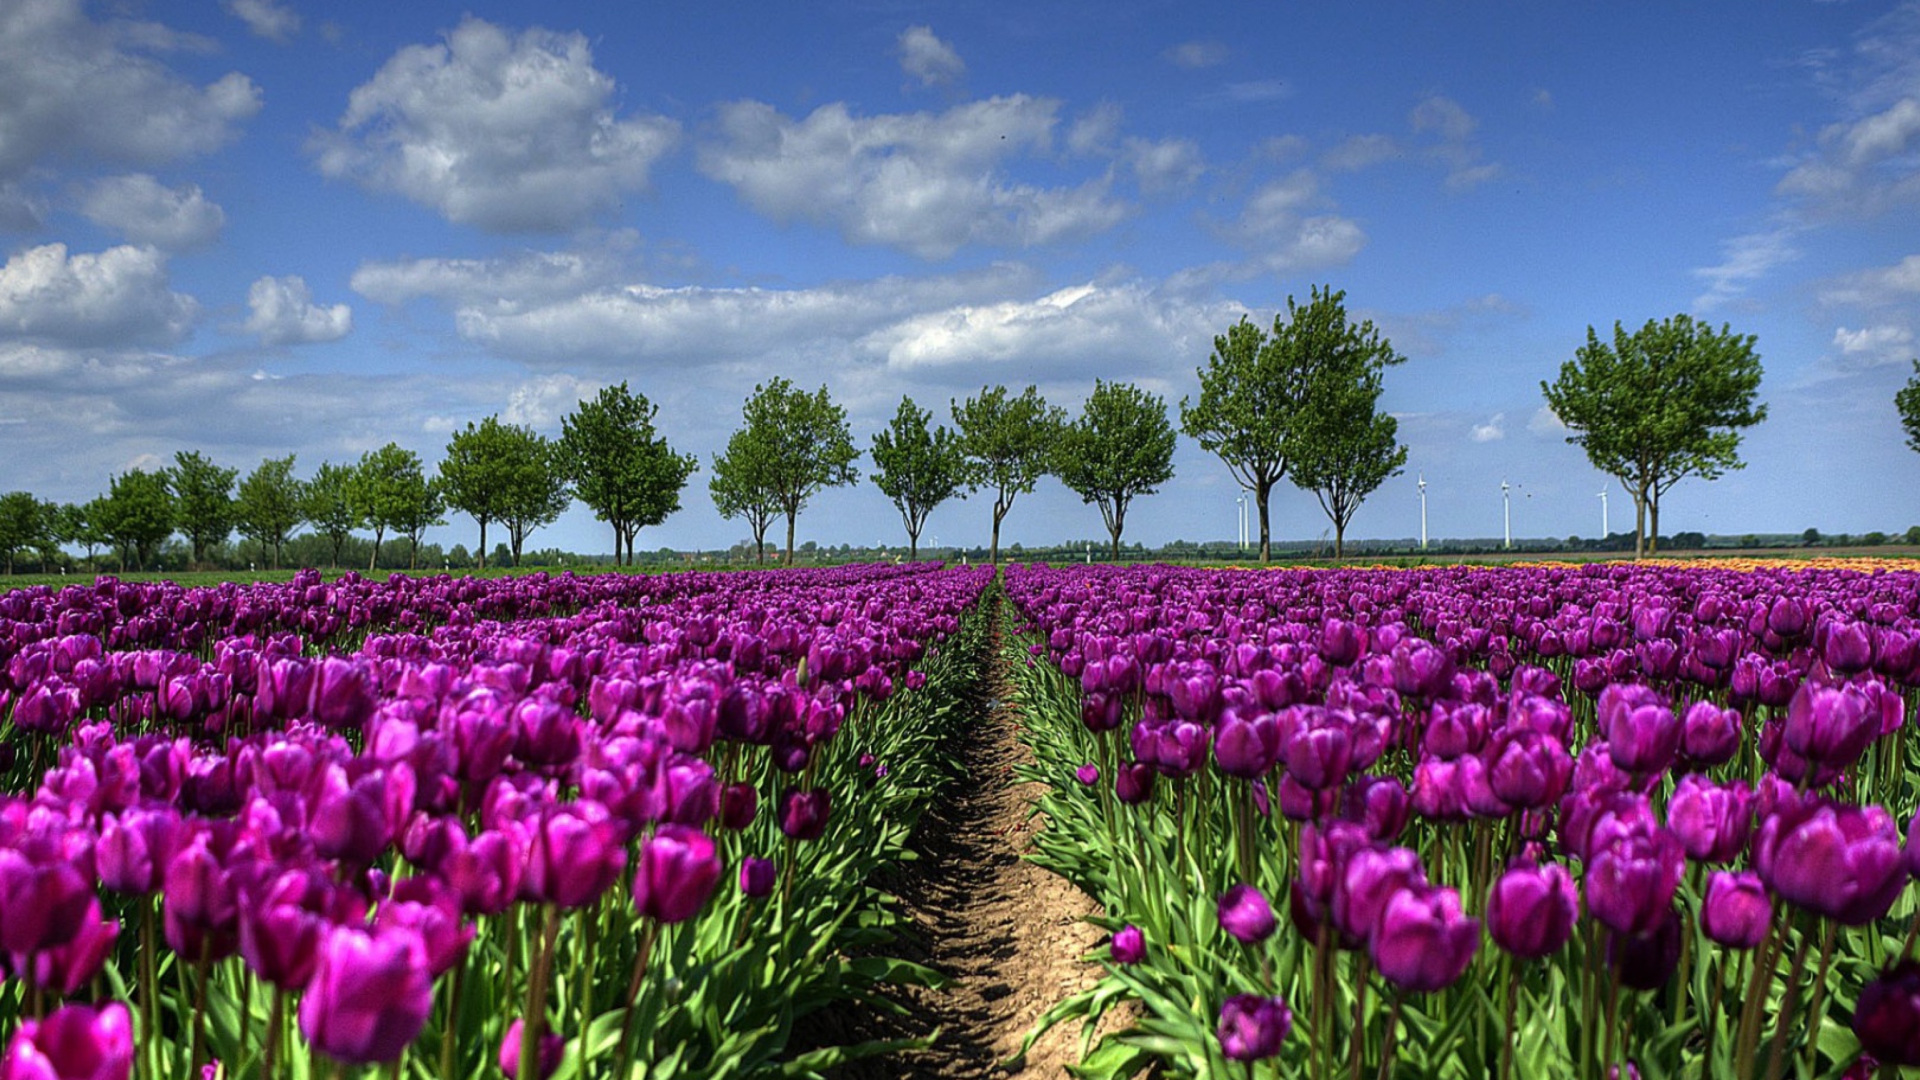 Purple Tulip Field In Holland Wallpaper for Desktop 1920x1080 Full HD